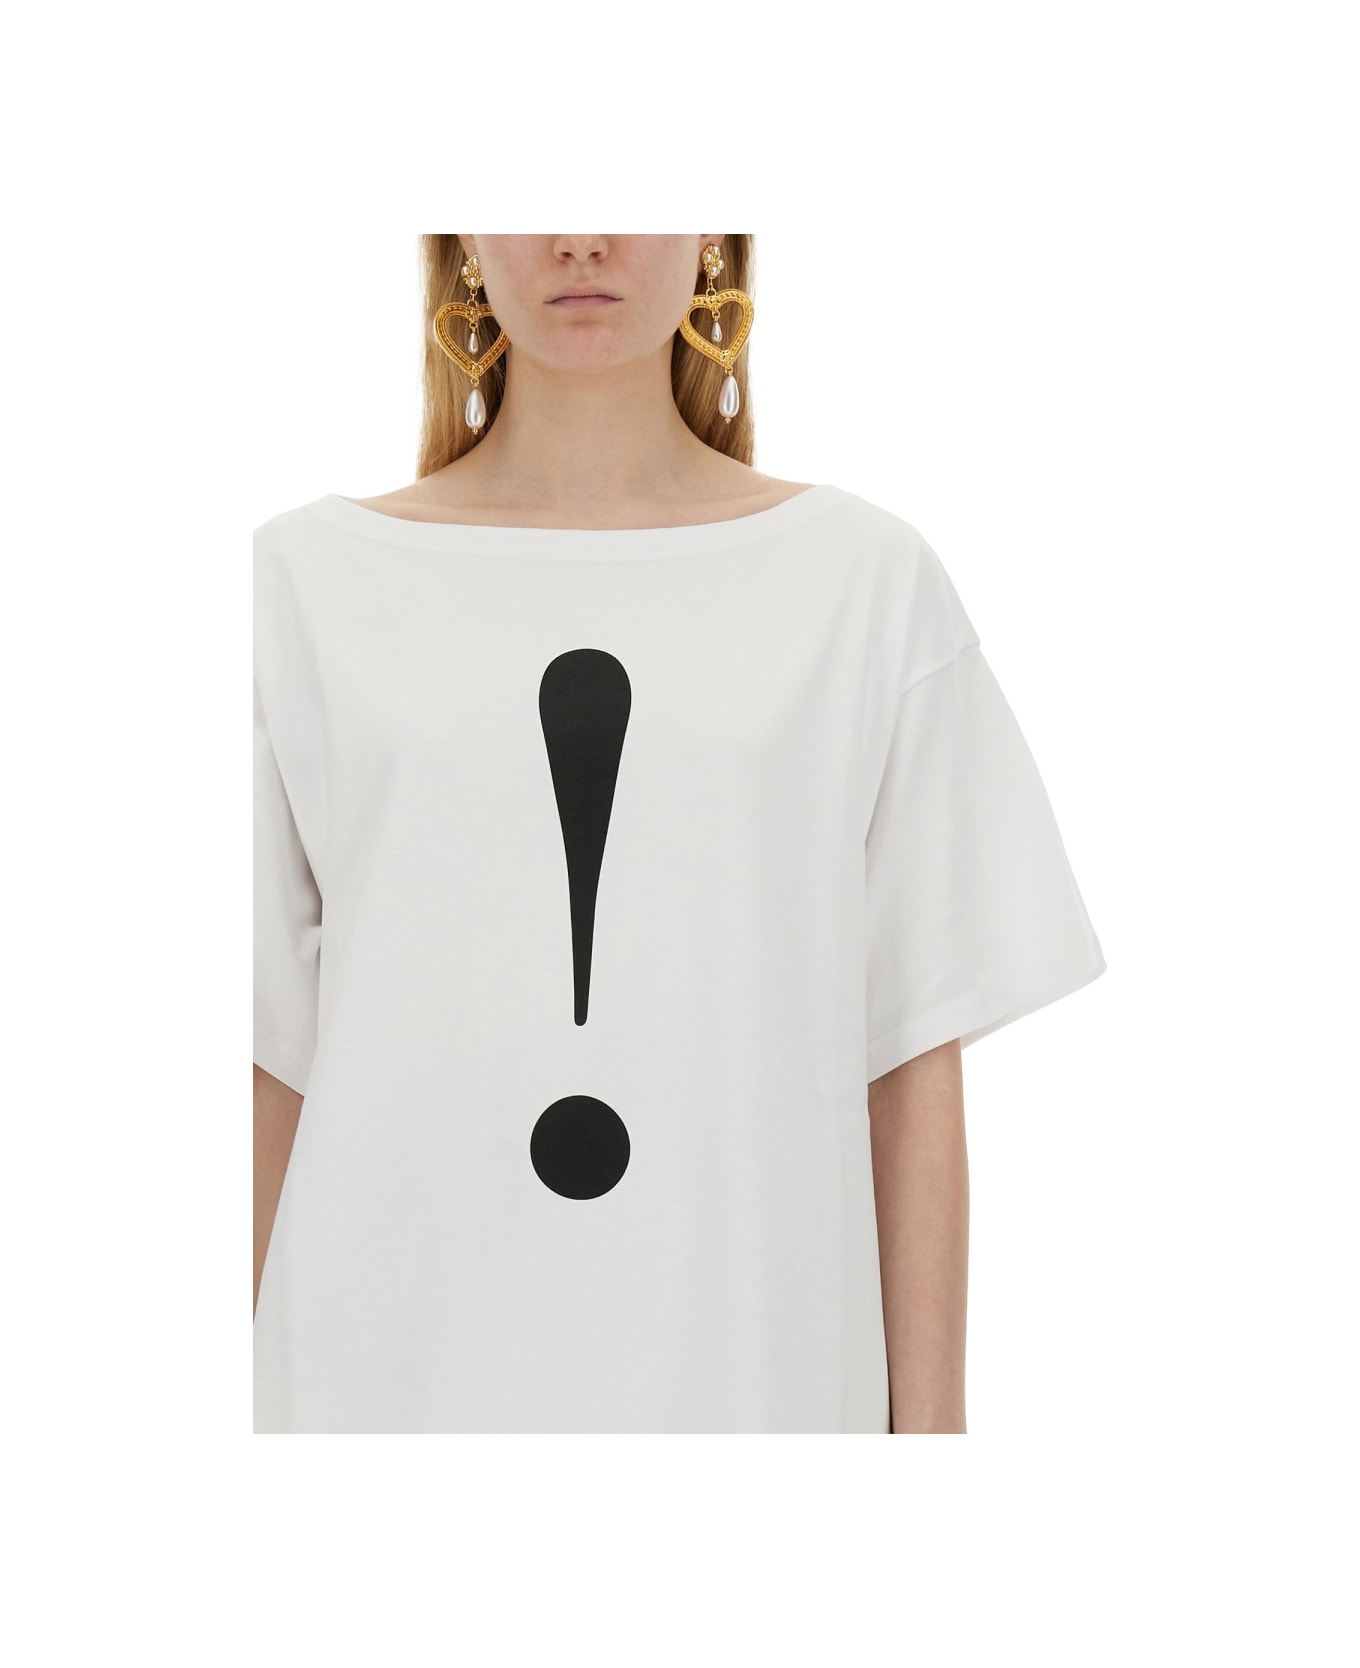 Moschino Interlock T-shirt - WHITE Tシャツ